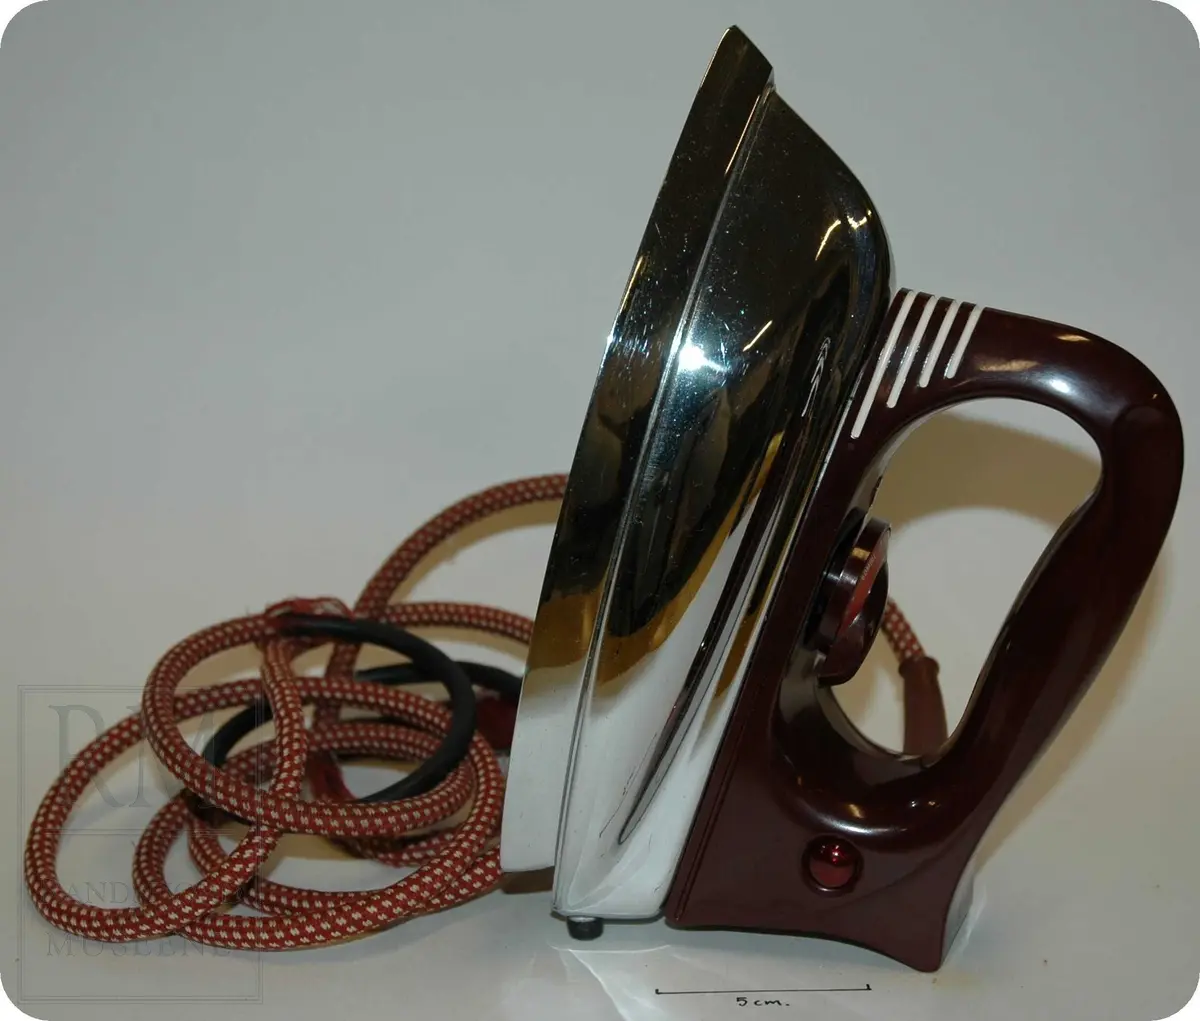 Trekantformet jern, med burgunderfarget plasthåndtak, med skive for å justere temperatur. 